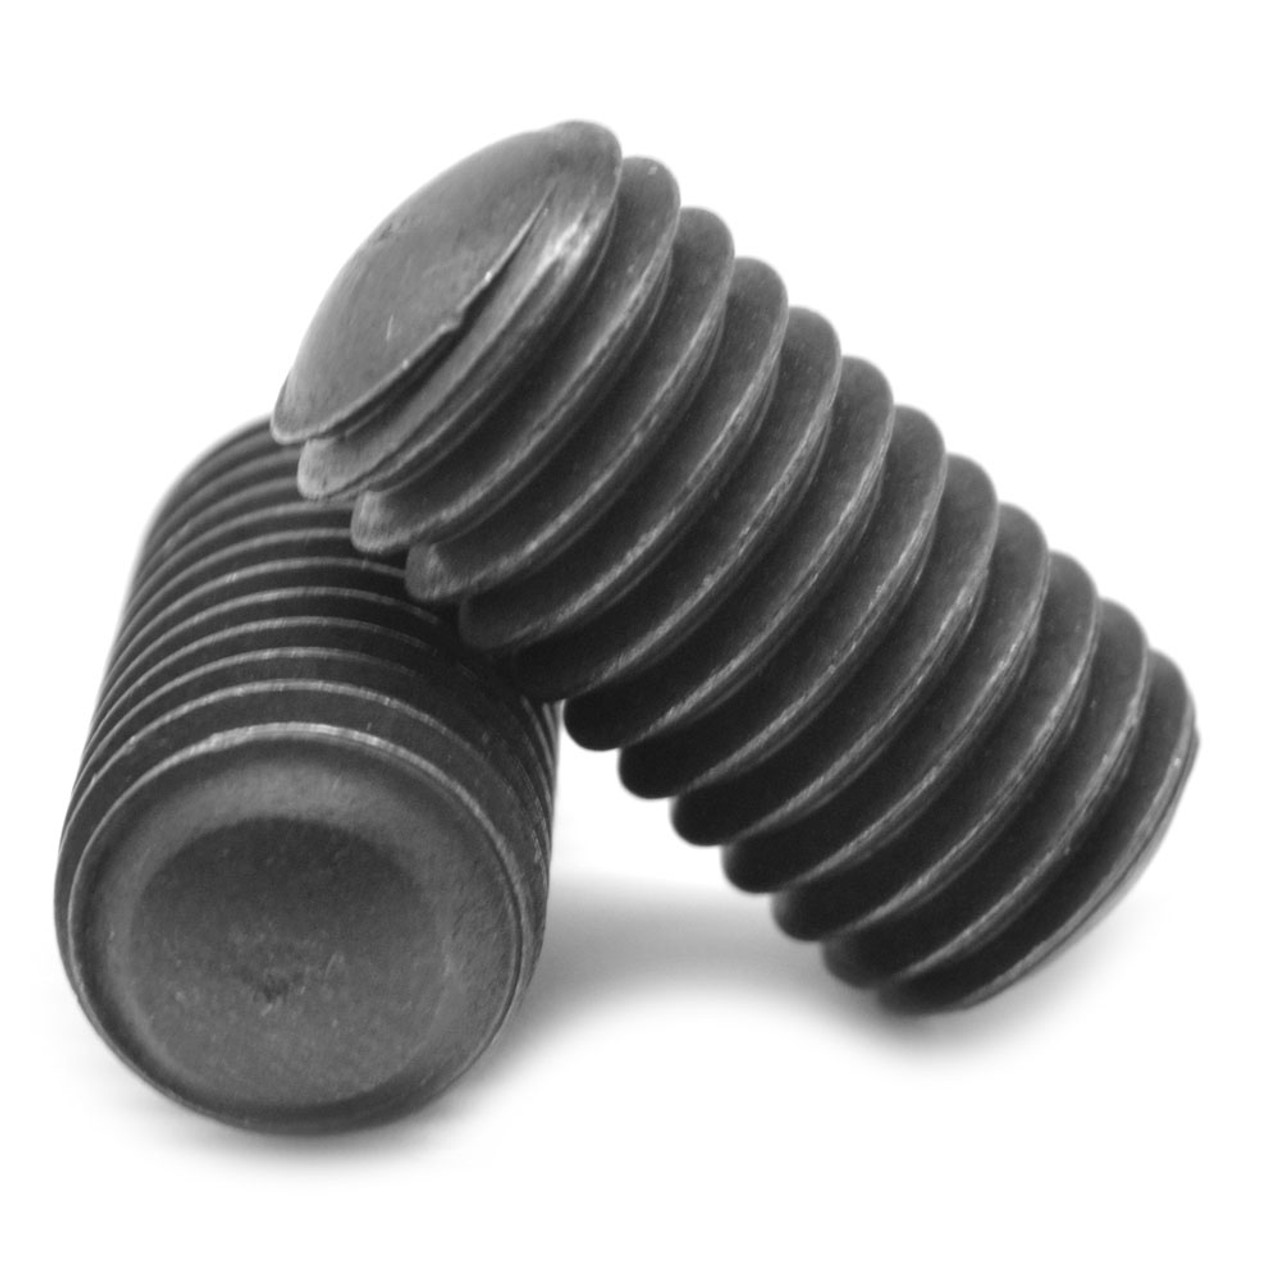 1/4"-28 x 1/4" Fine Thread Socket Set Screw Oval Point Alloy Steel Black Oxide